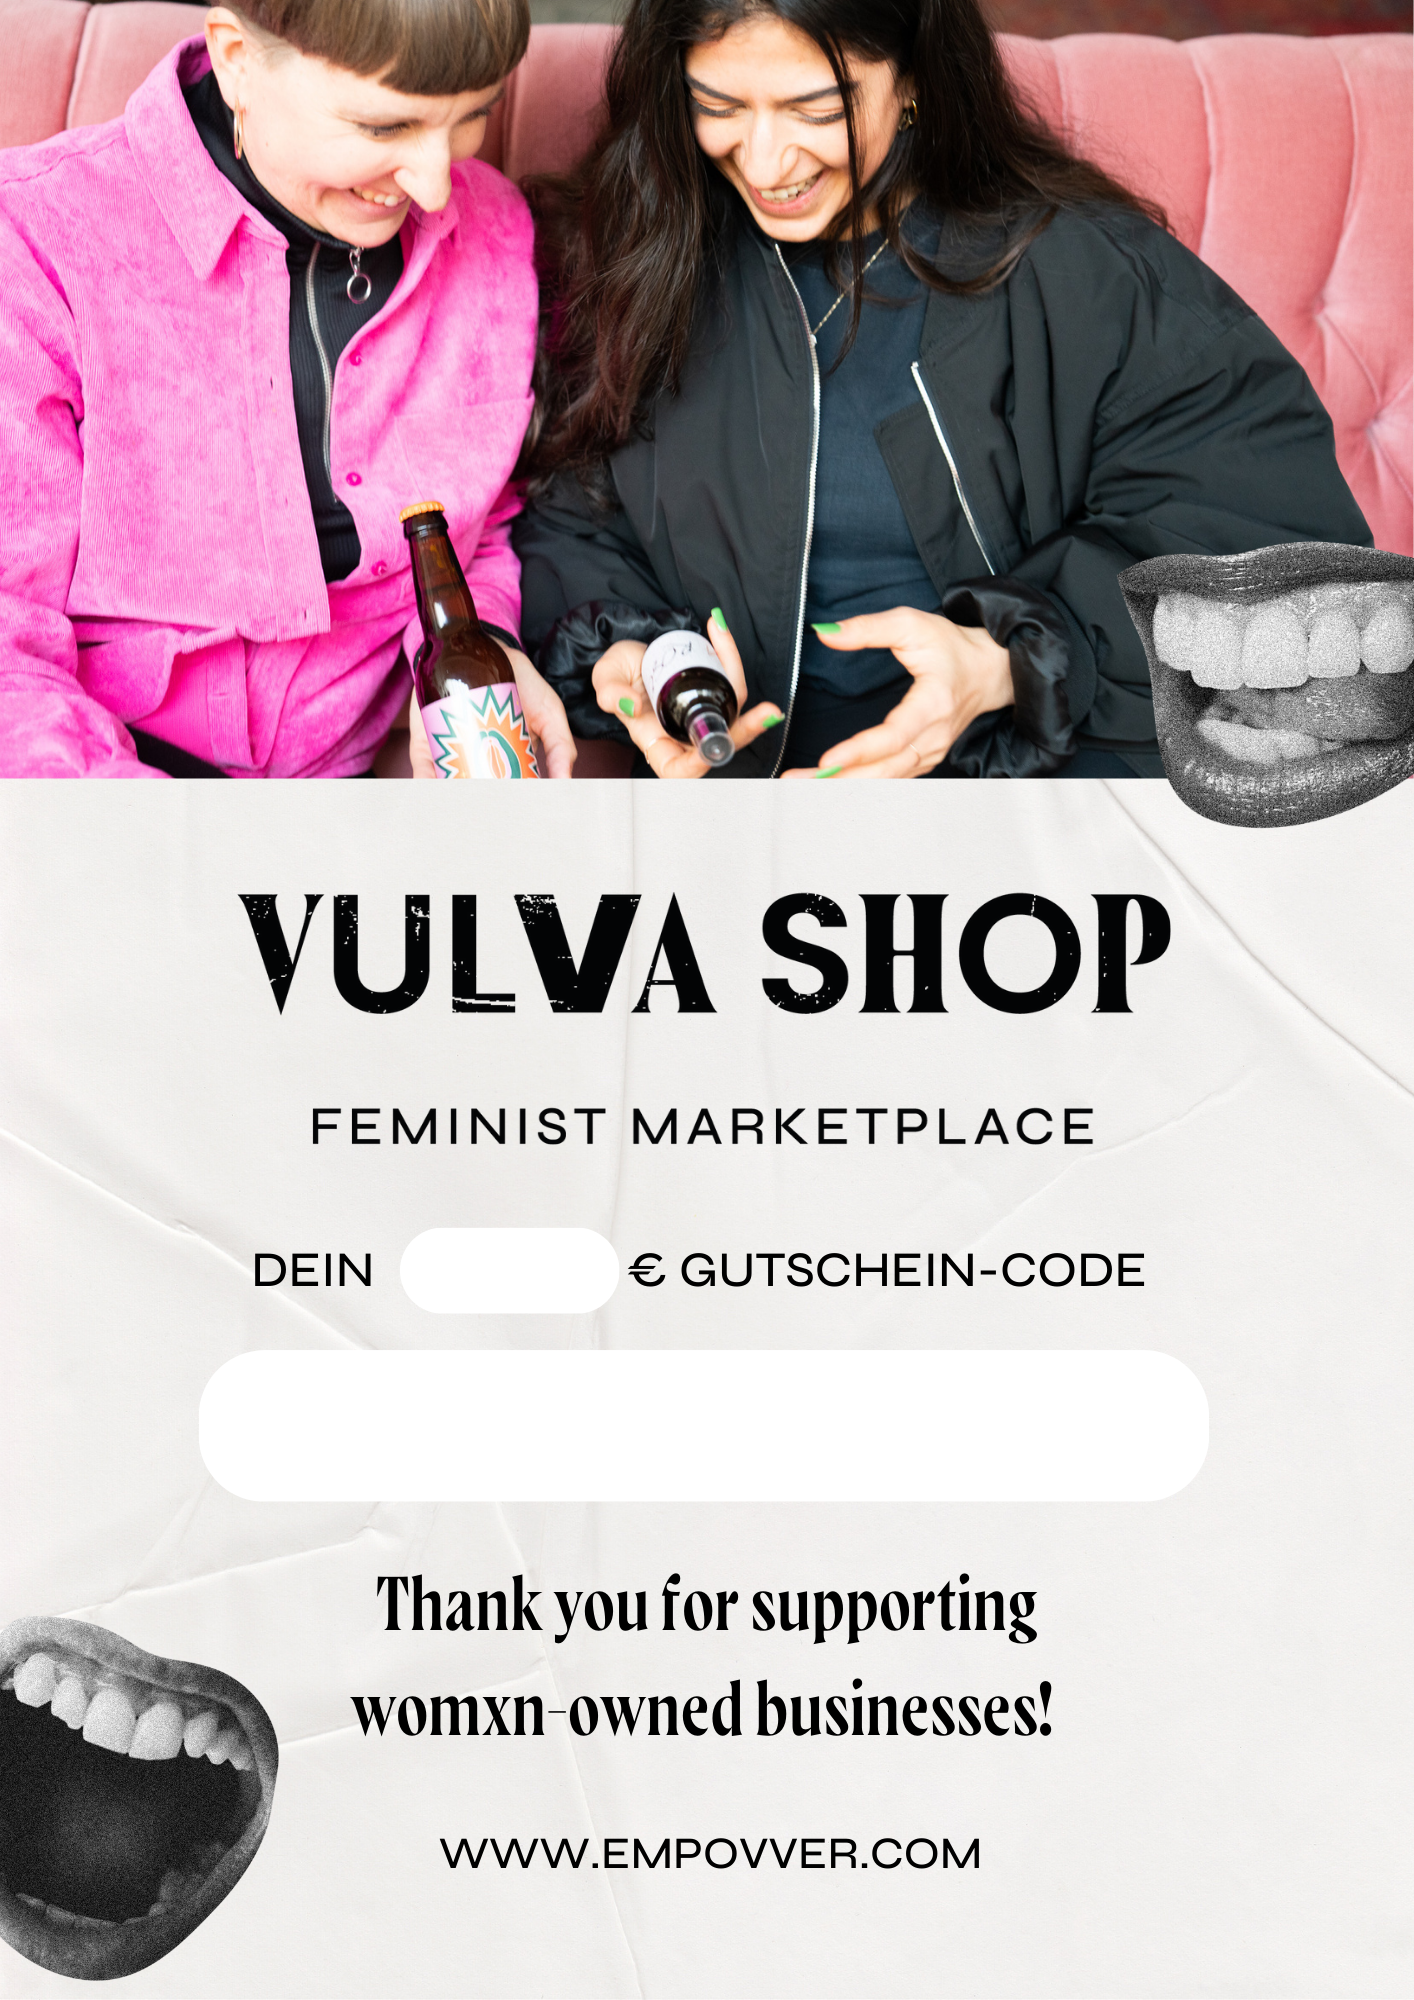 Vulva Shop gift voucher